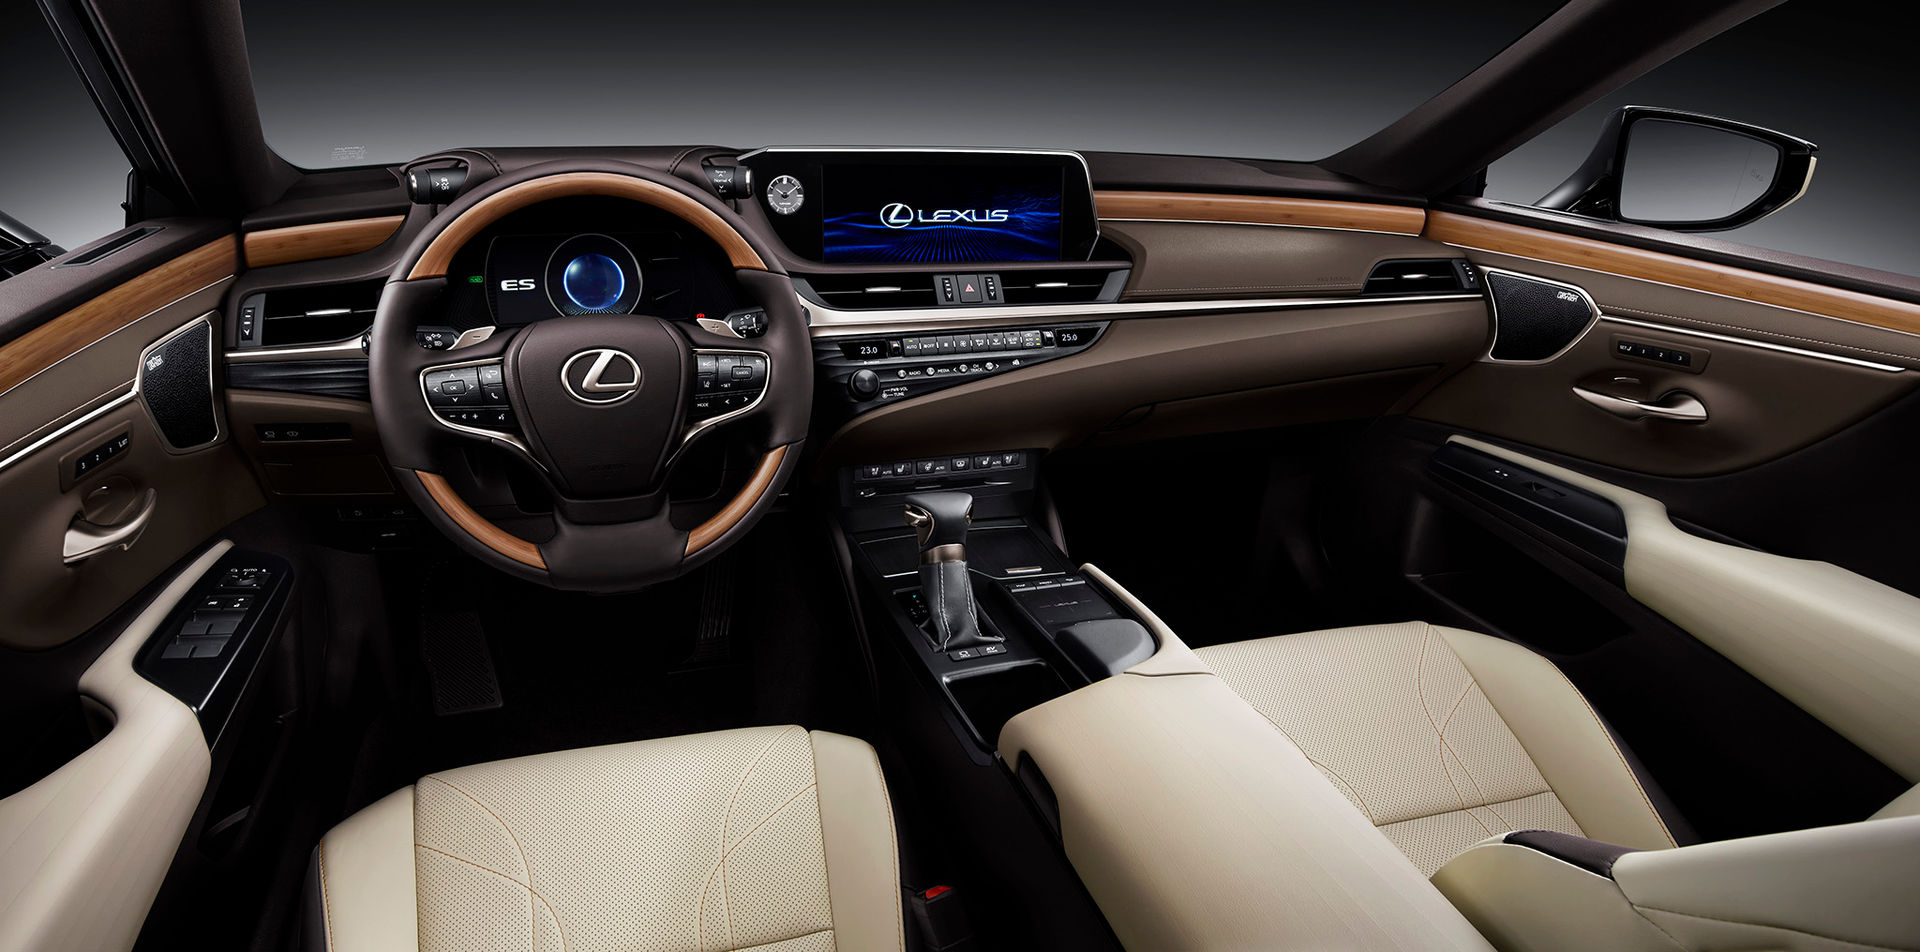 Khoang lái khá thoáng của Lexus ES250.